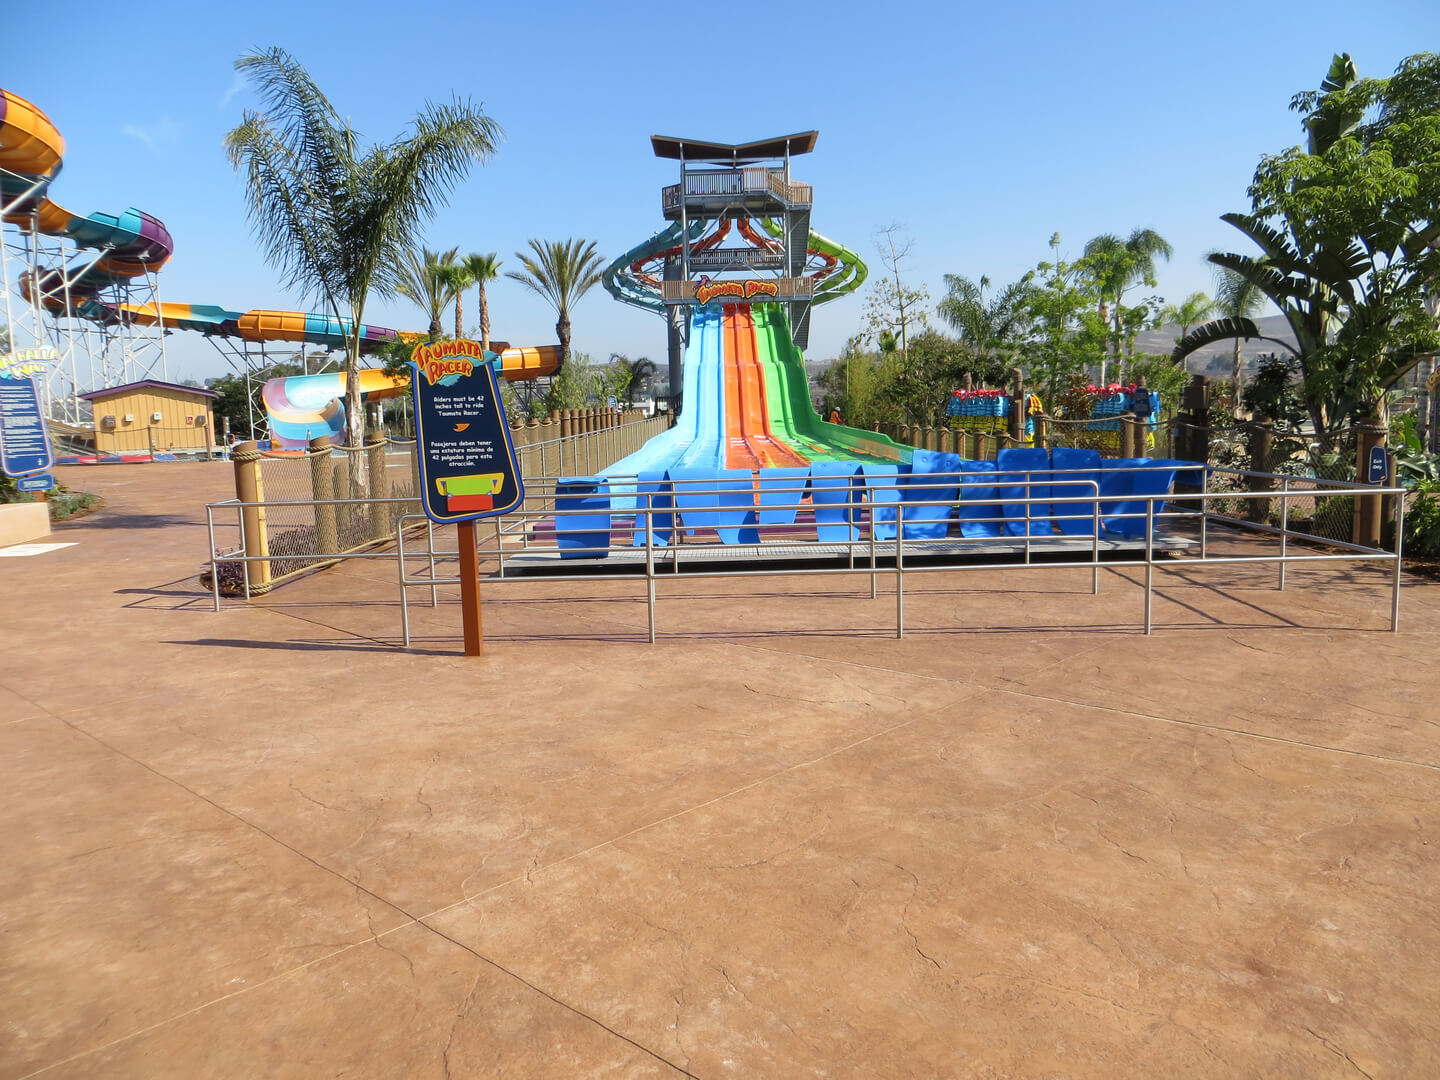 A Water Slide in an Amusement Park